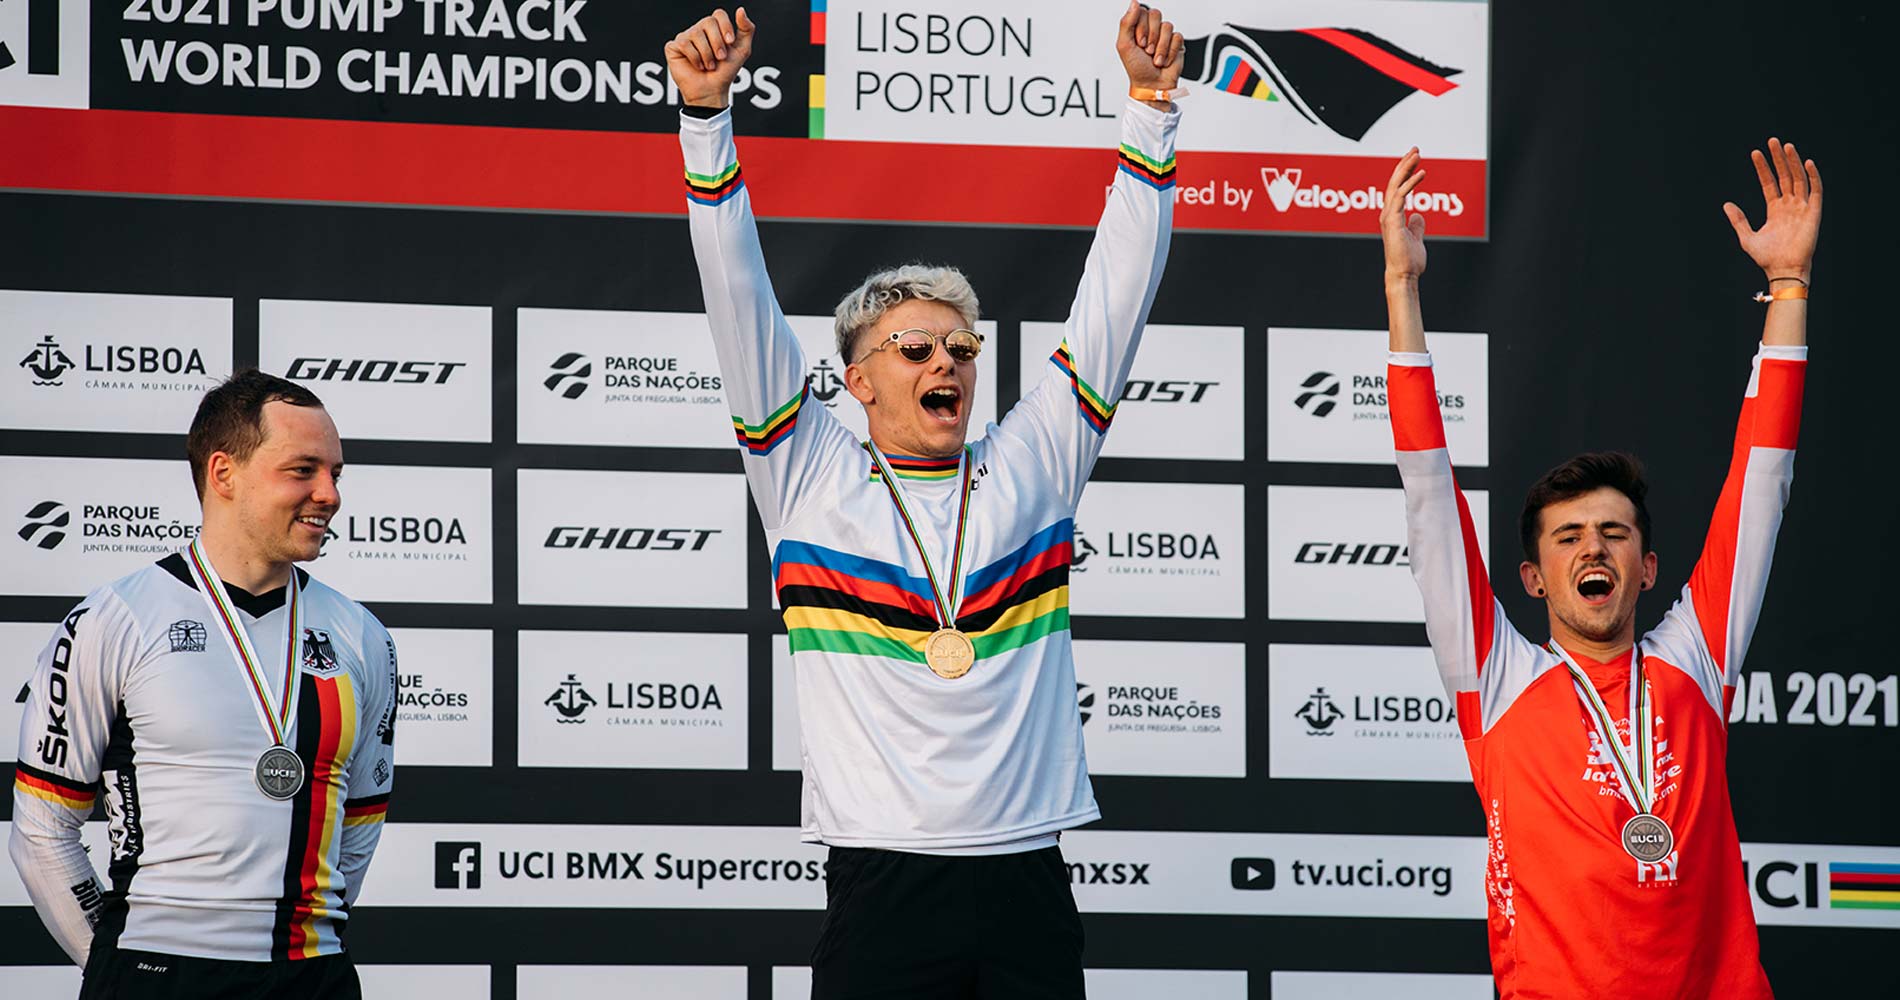 Eddy CLERTÉ – Champion du Monde de Pump Track